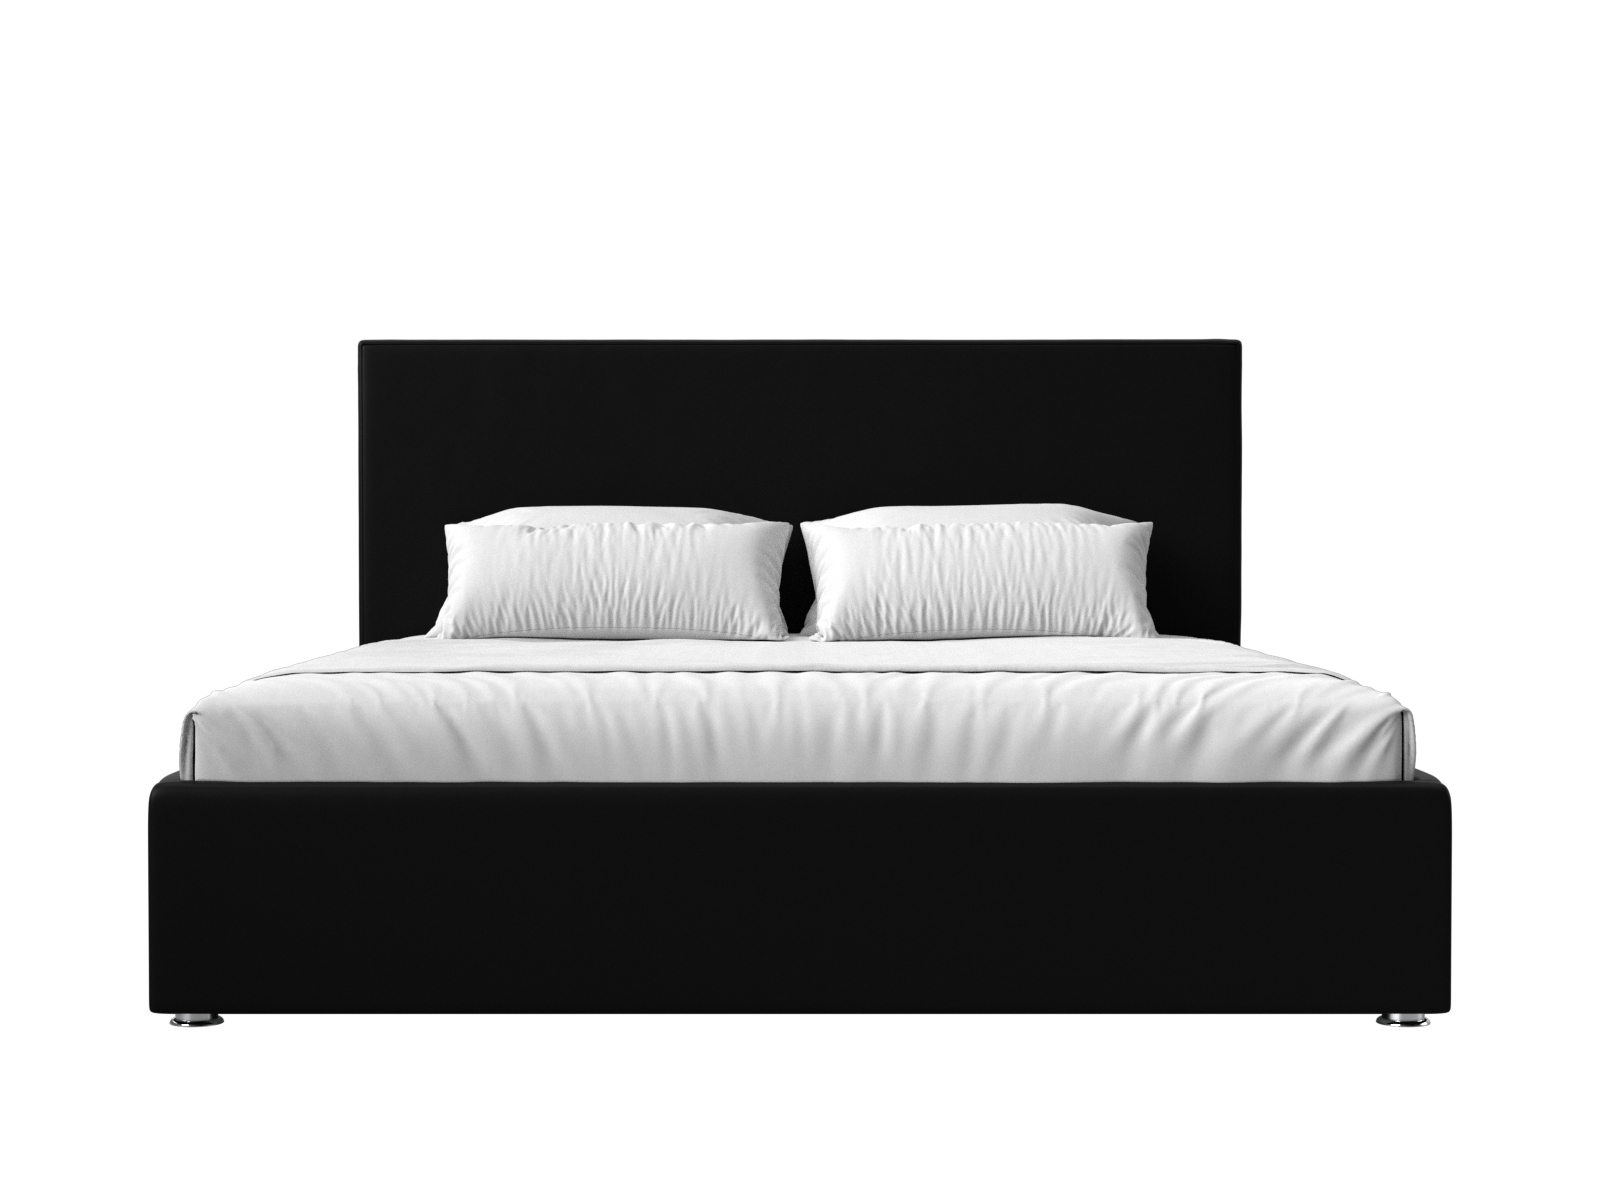 Интерьерная кровать Кариба 200 (Черный)